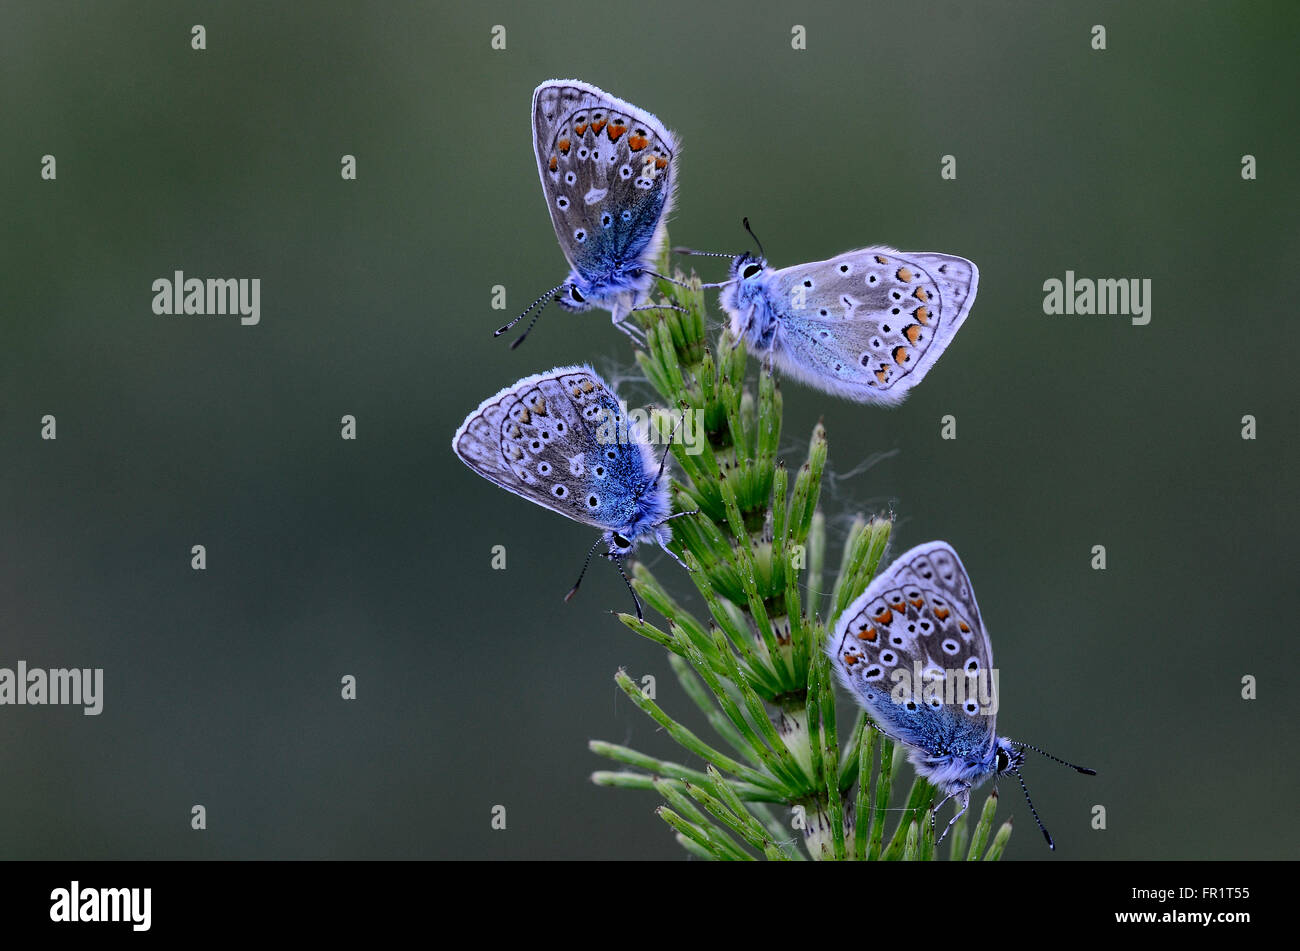 Quatre papillons bleu commun au repos. Dorset, UK Juin 2015 Banque D'Images